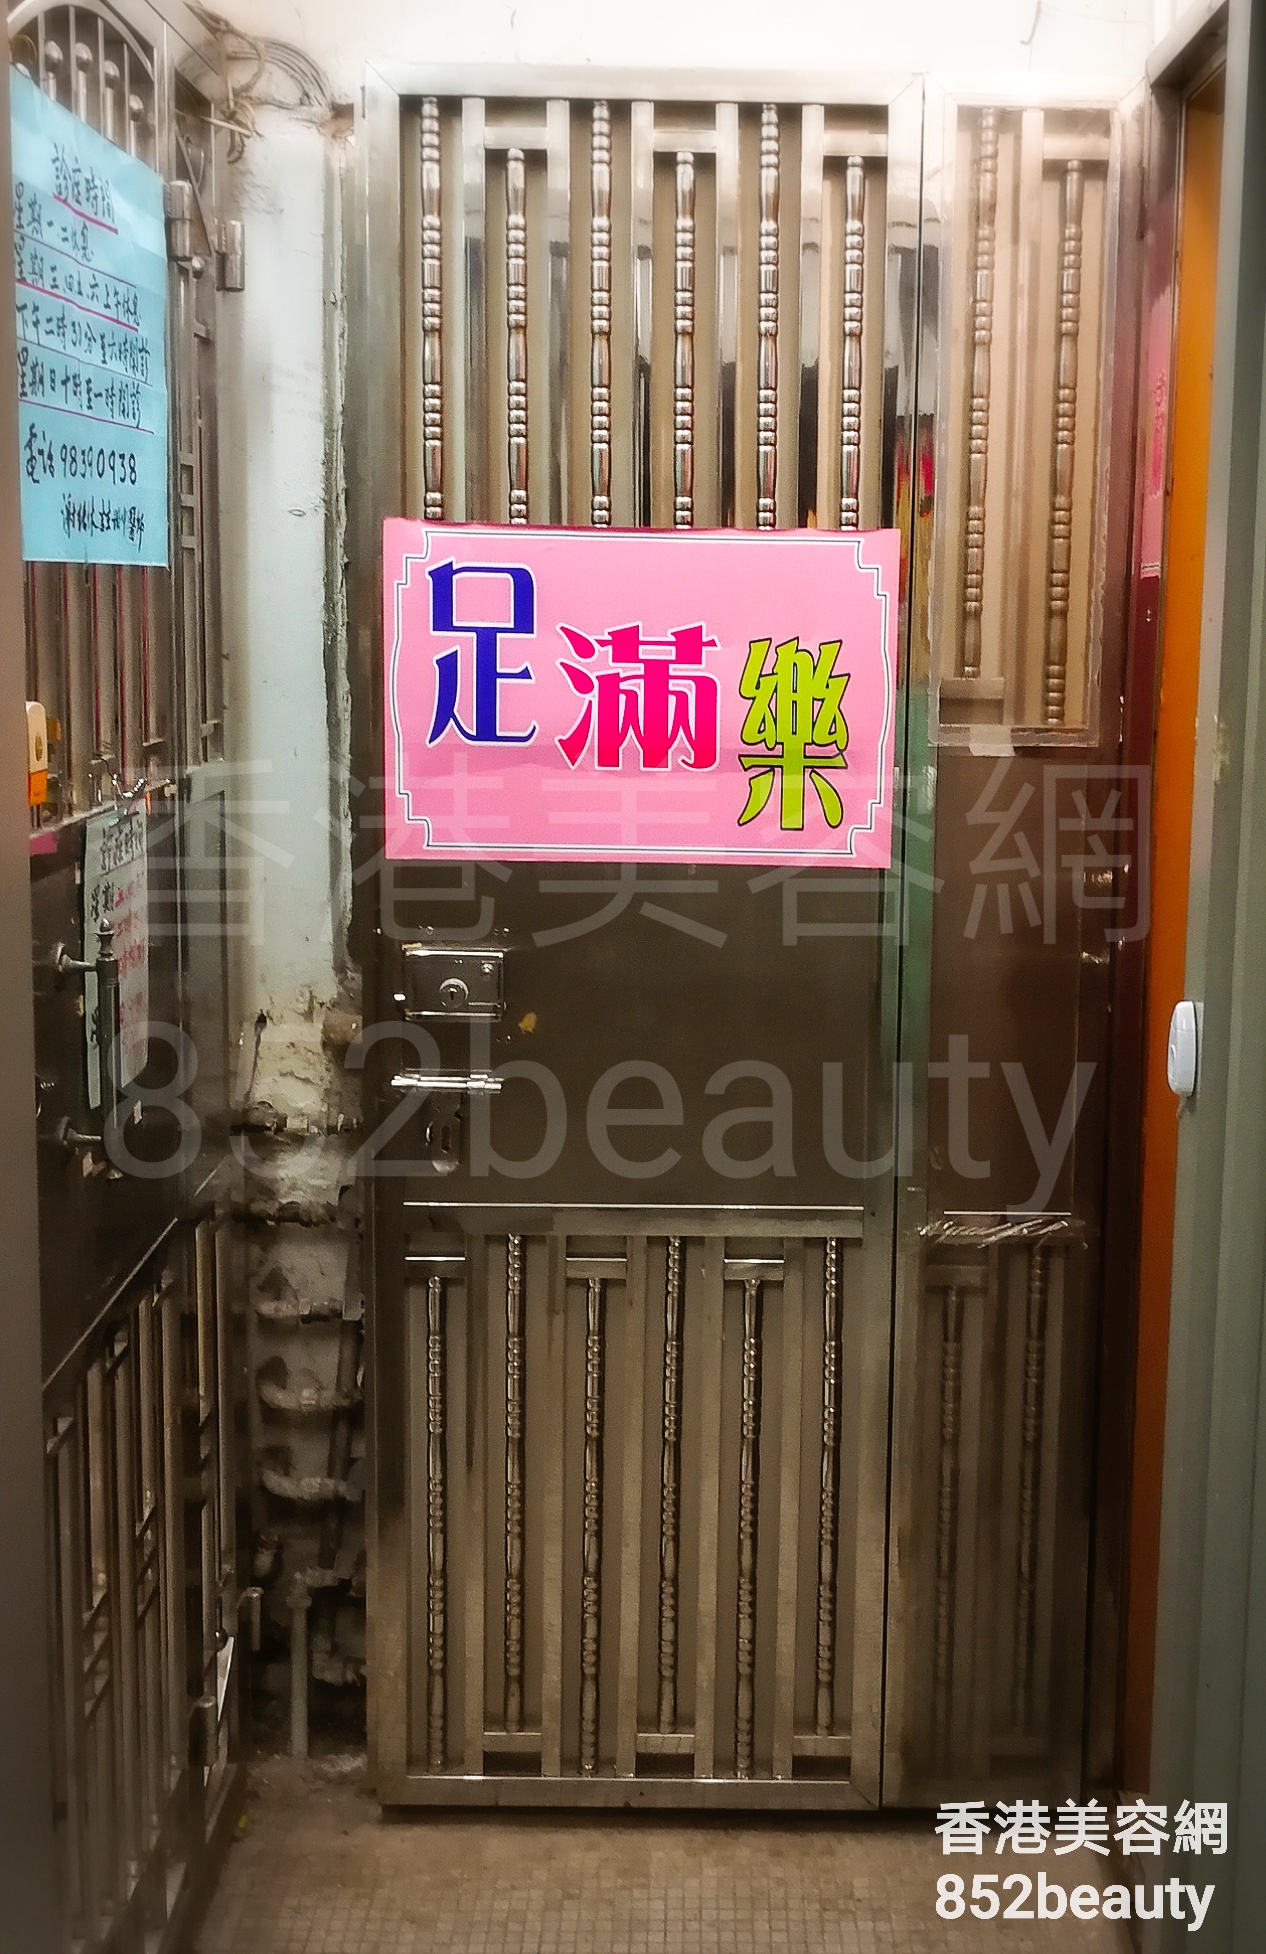 美容院 Beauty Salon: 足滿樂